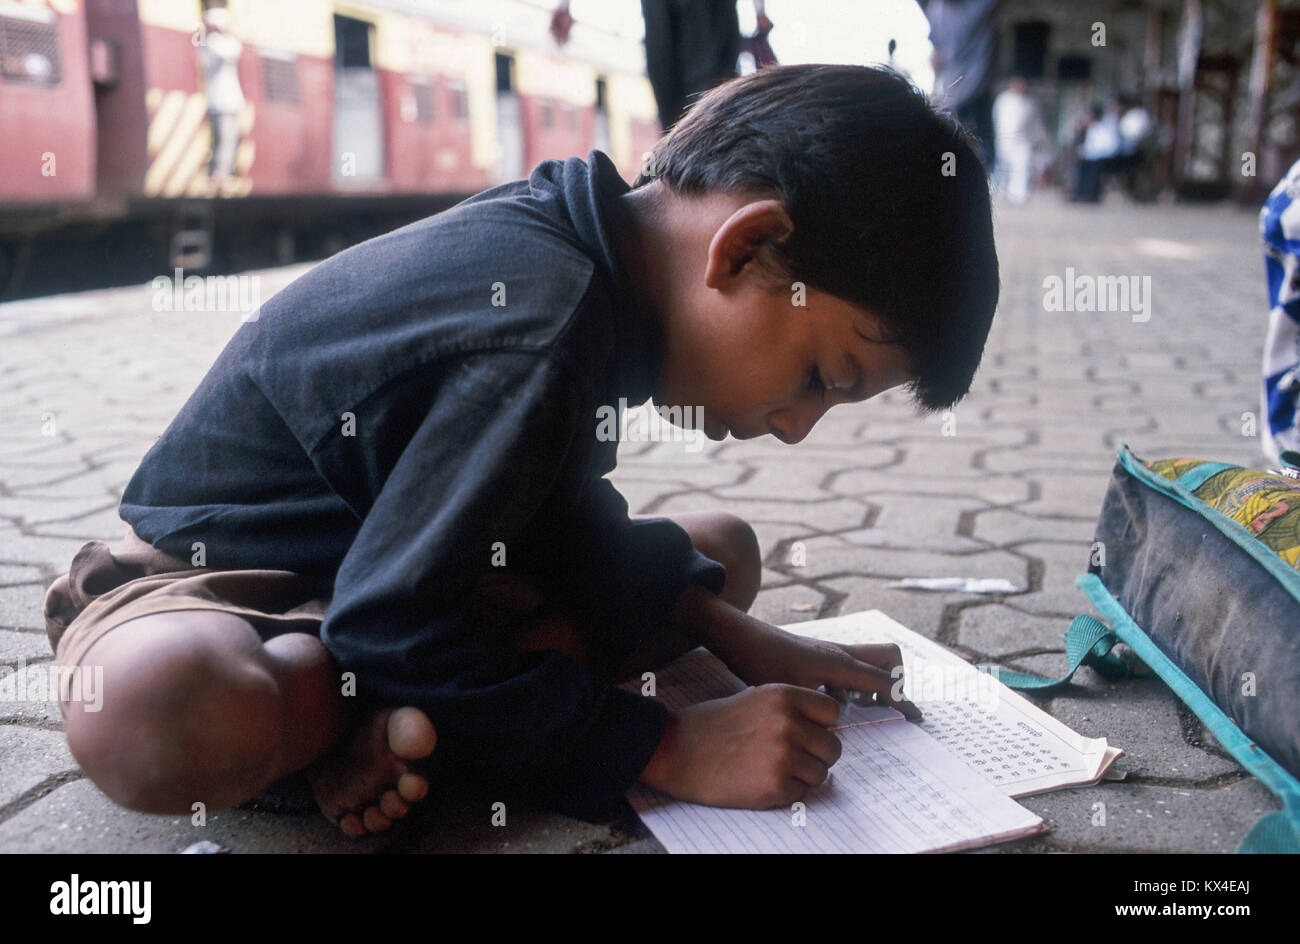 L'Inde, Mumbai, Bombay, ancien porte-parole des ONG l'éducation donne des classes pour les enfants de la rue et du chemin de fer sur la plate-forme à la gare Andheri, garçon Raju, derrière la gare de chemin de fer de l'ouest de la ville Banque D'Images